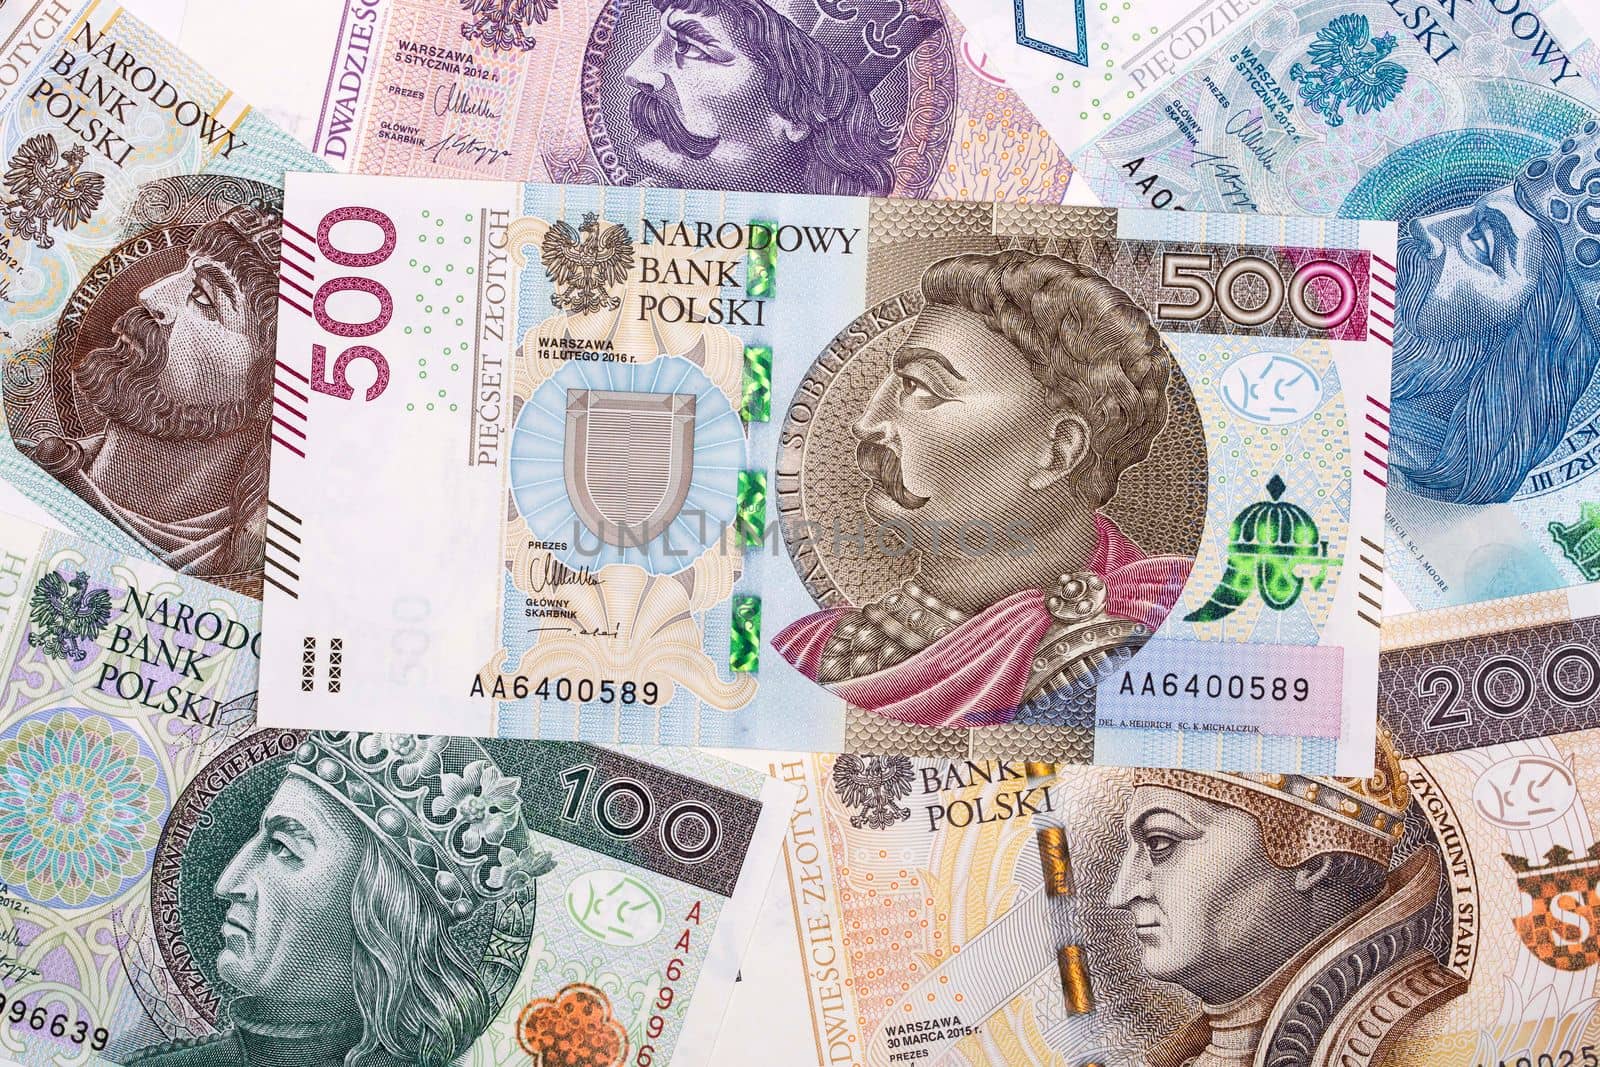 Polish money - Zloty a background by johan10